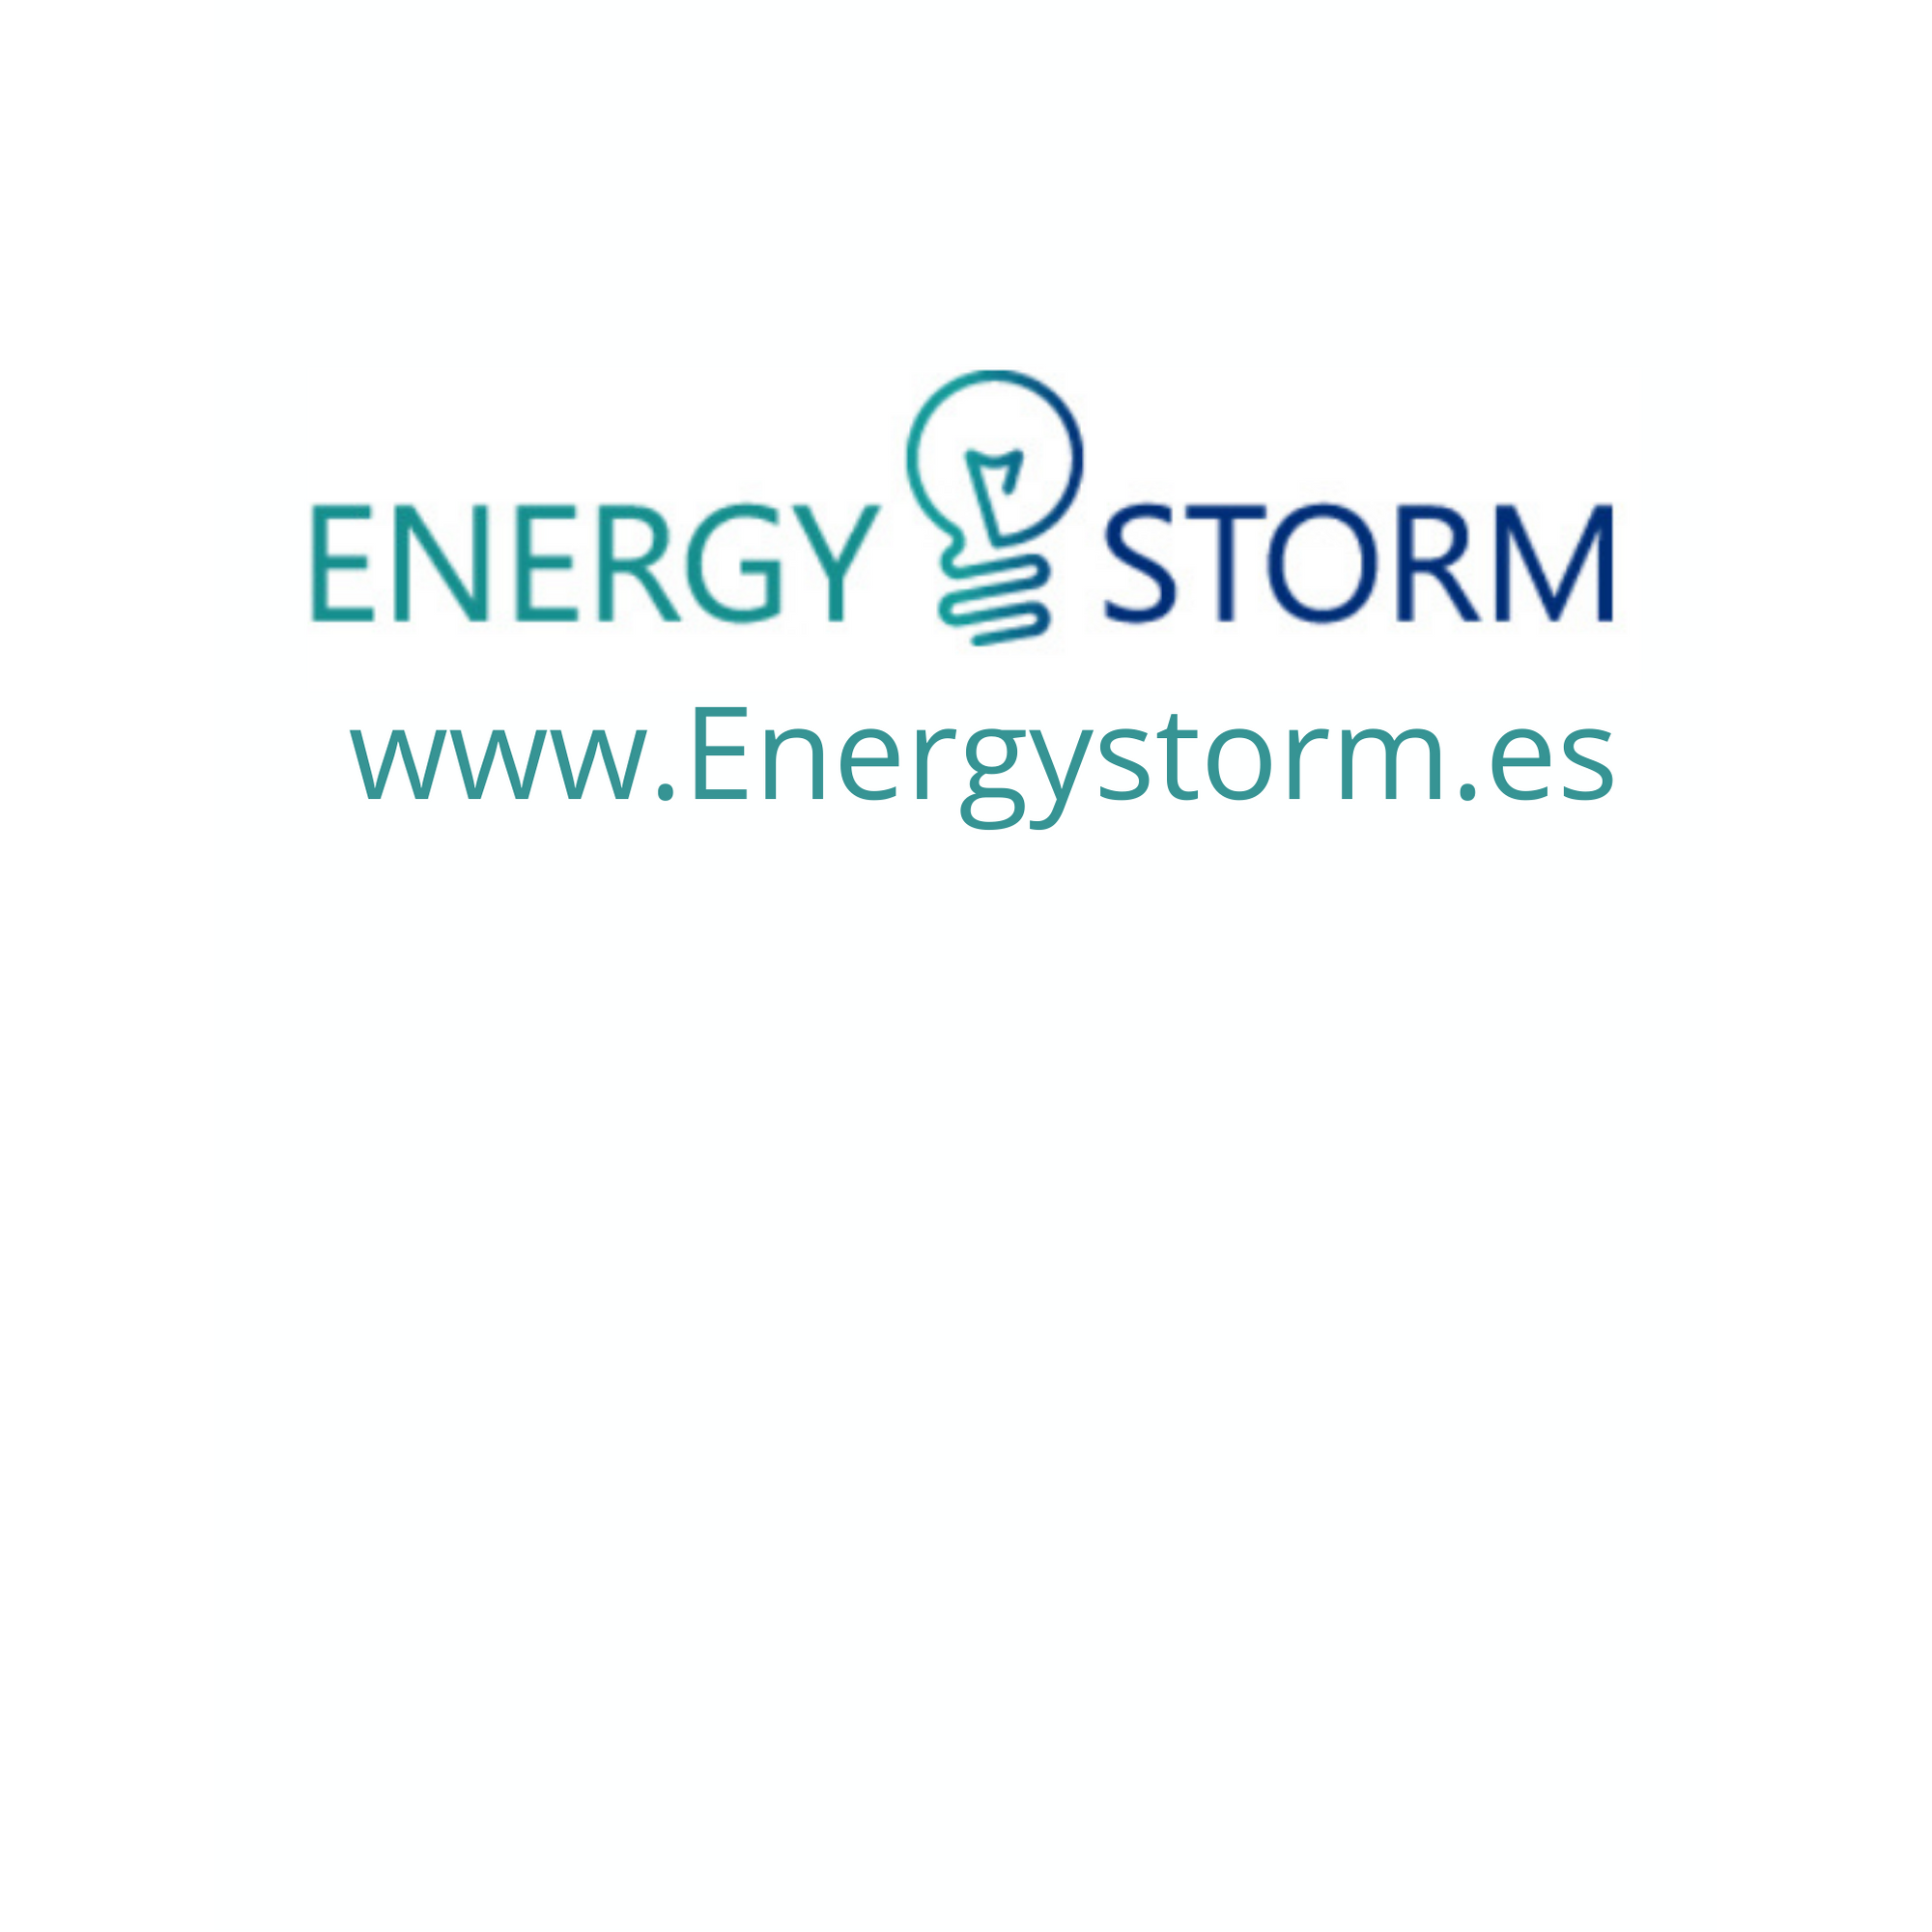 ENERGY - STORM Mataró